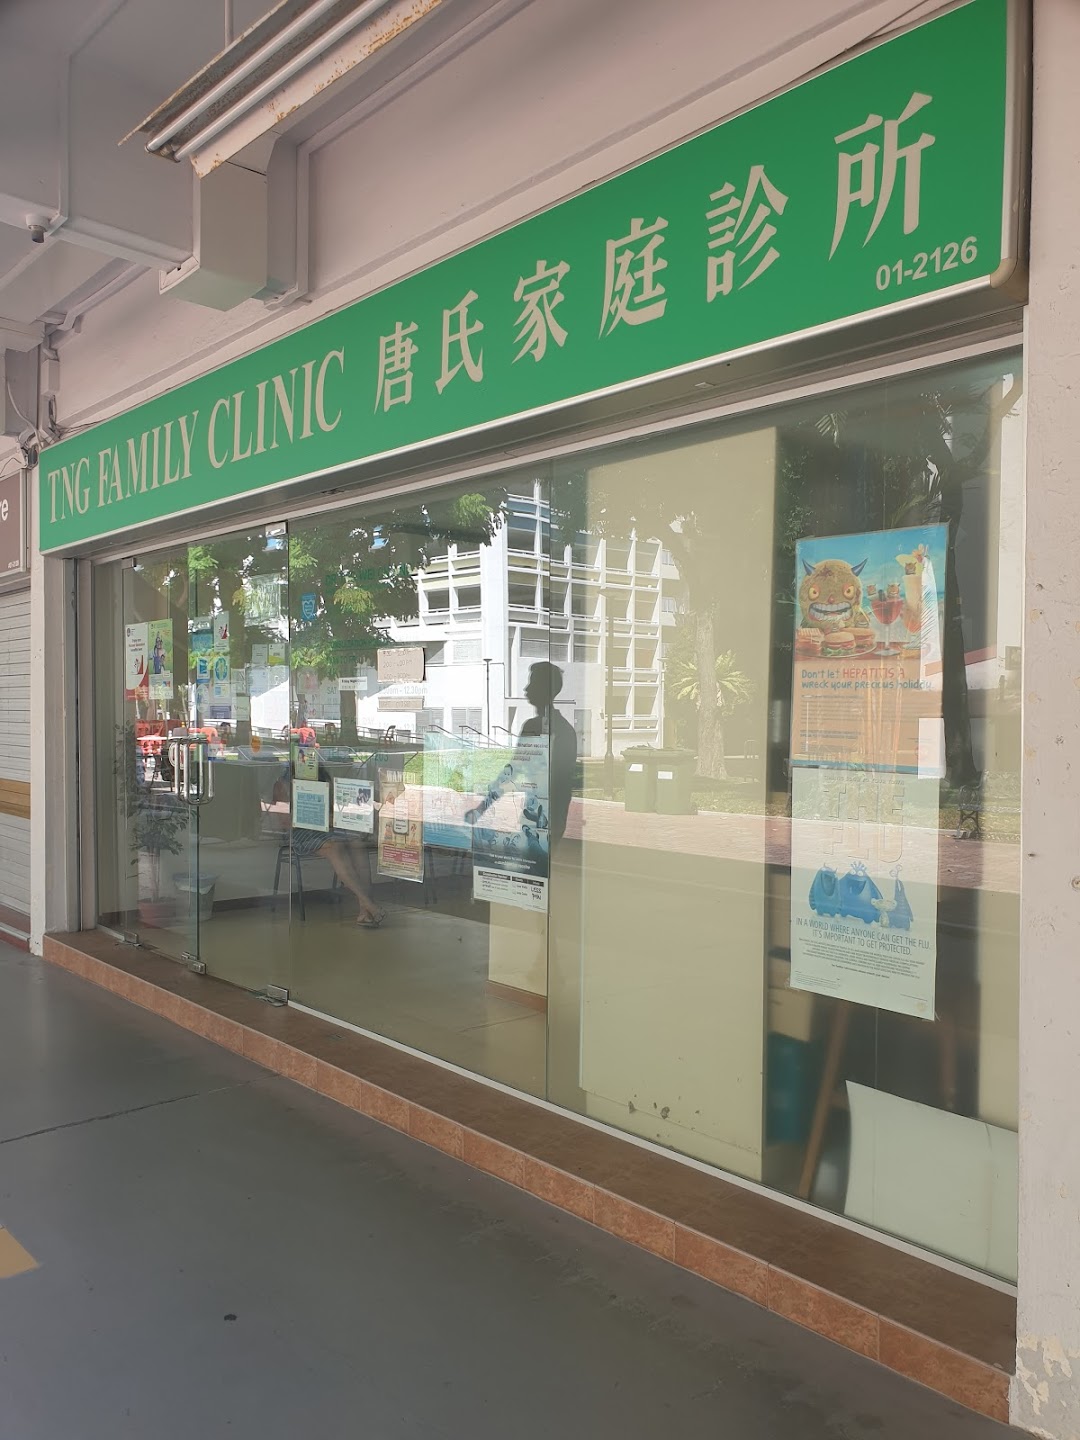 Tng Family Clinic